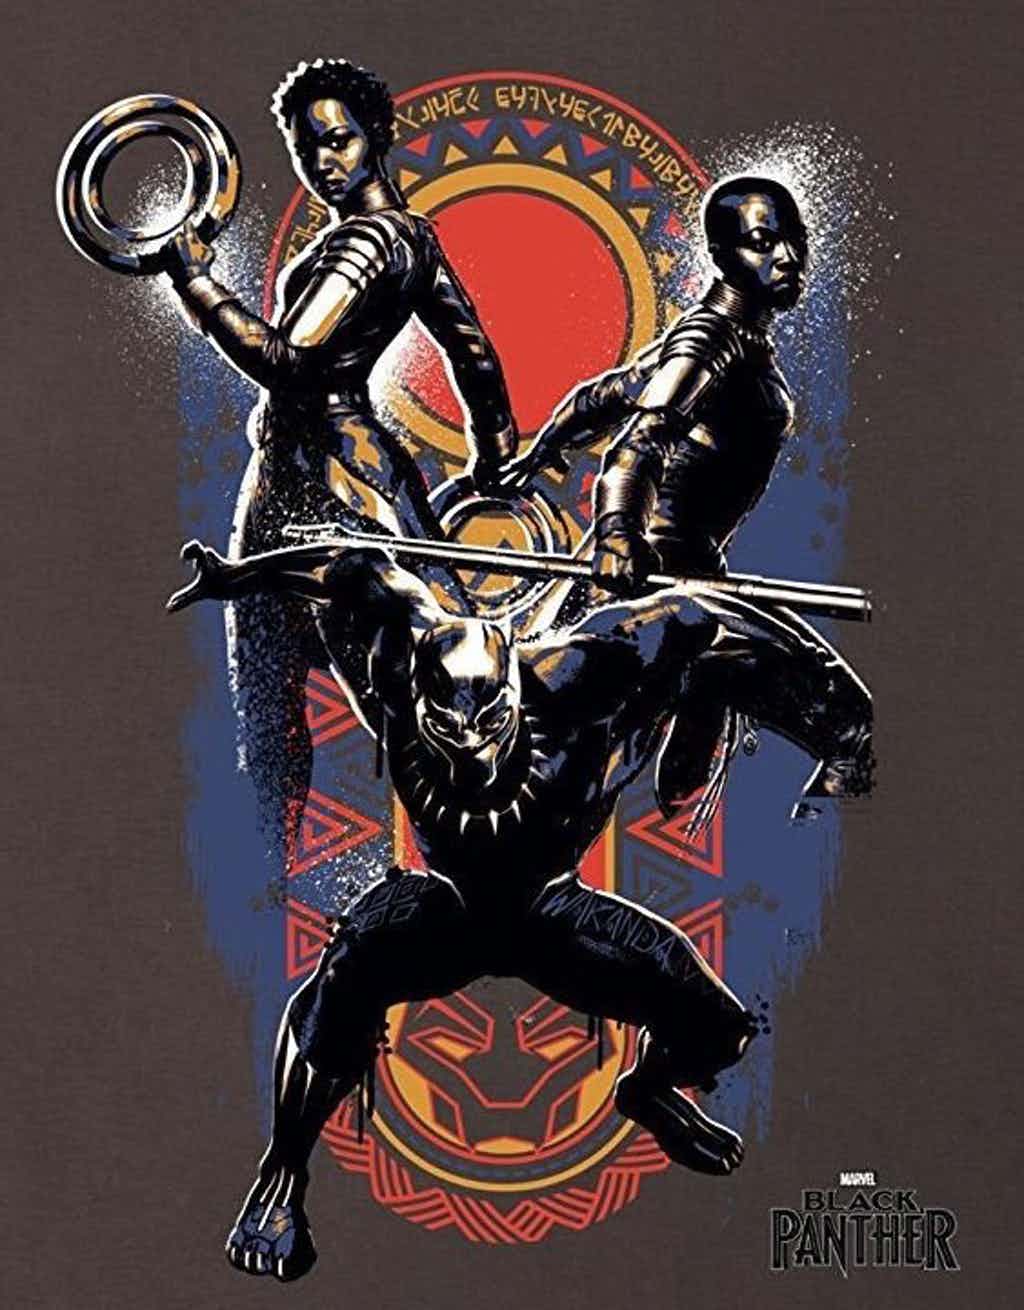 Black Panther Marvel poster